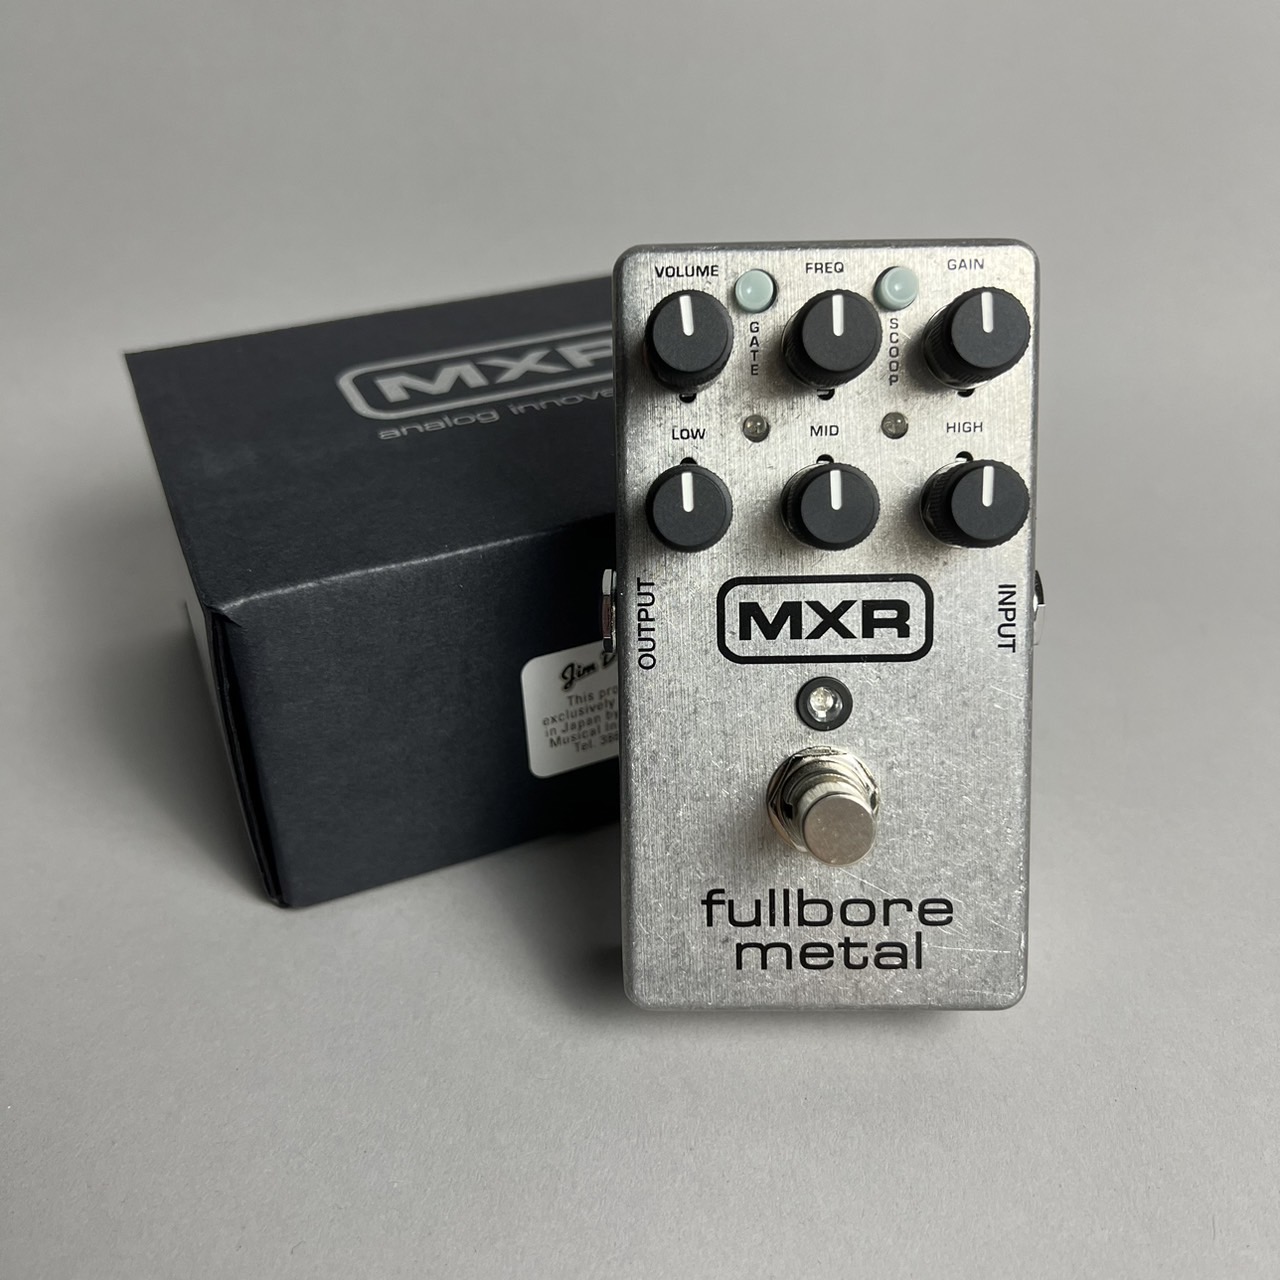 MXR (エムエックスアール) M116 Fullbore Metal エムエックスアール 【 モラージュ菖蒲店 】 島村楽器オンラインストア